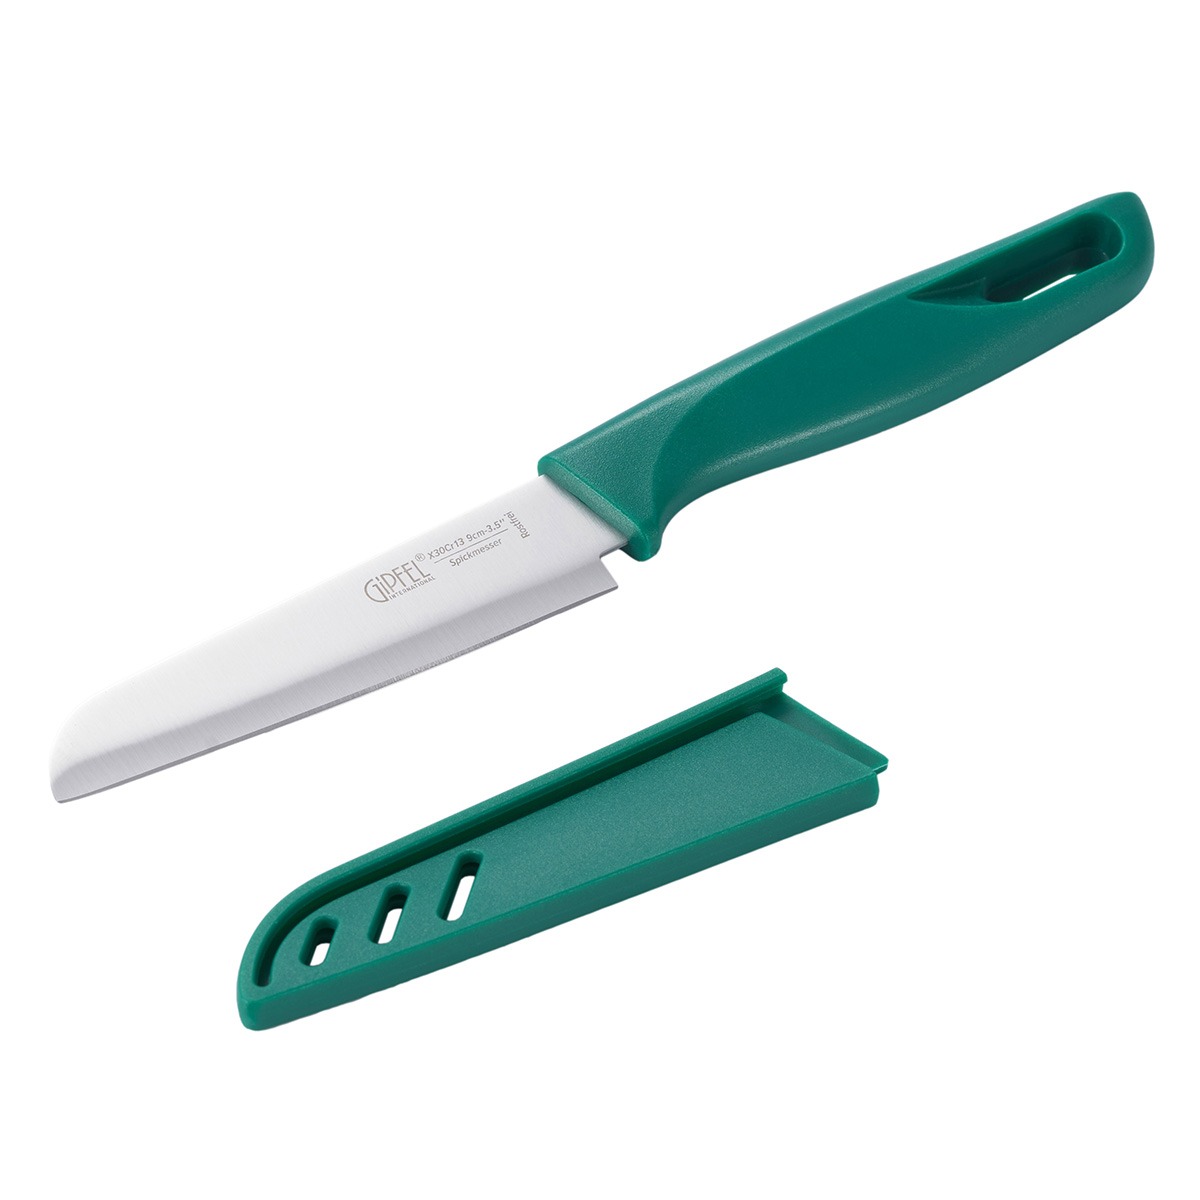 Нож для чистки овощей Gipfel Sorti стальной зеленый 9 см нож для чистки овощей gipfel sorti стальной зеленый 9 см